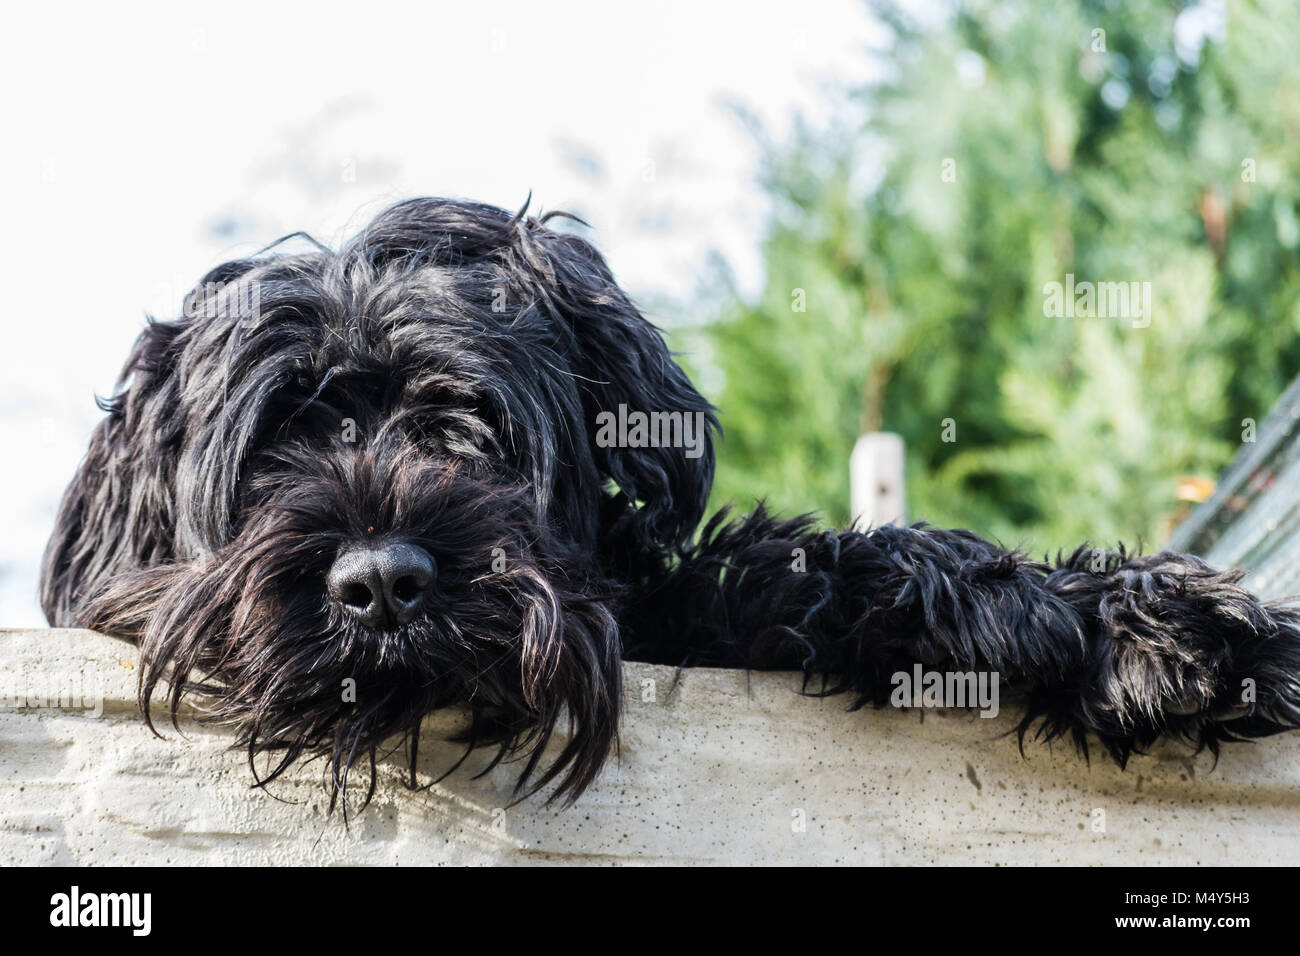 Grande cane peloso immagini e fotografie stock ad alta risoluzione - Alamy